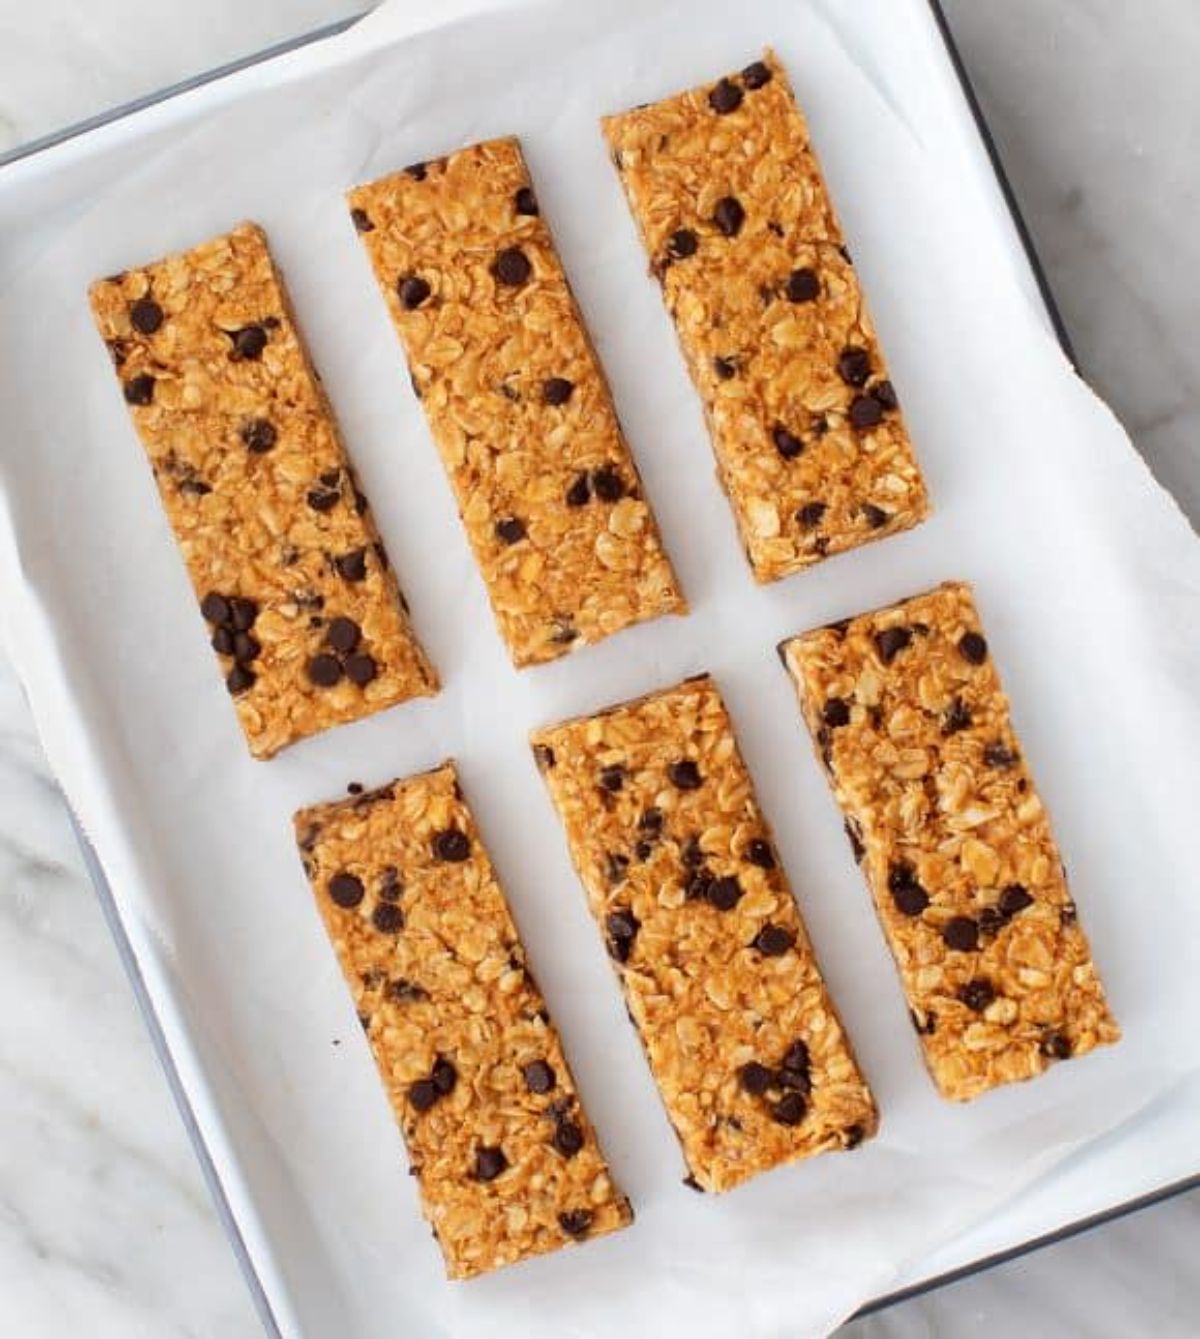 Healthy homemade granola bars on a baking tray.